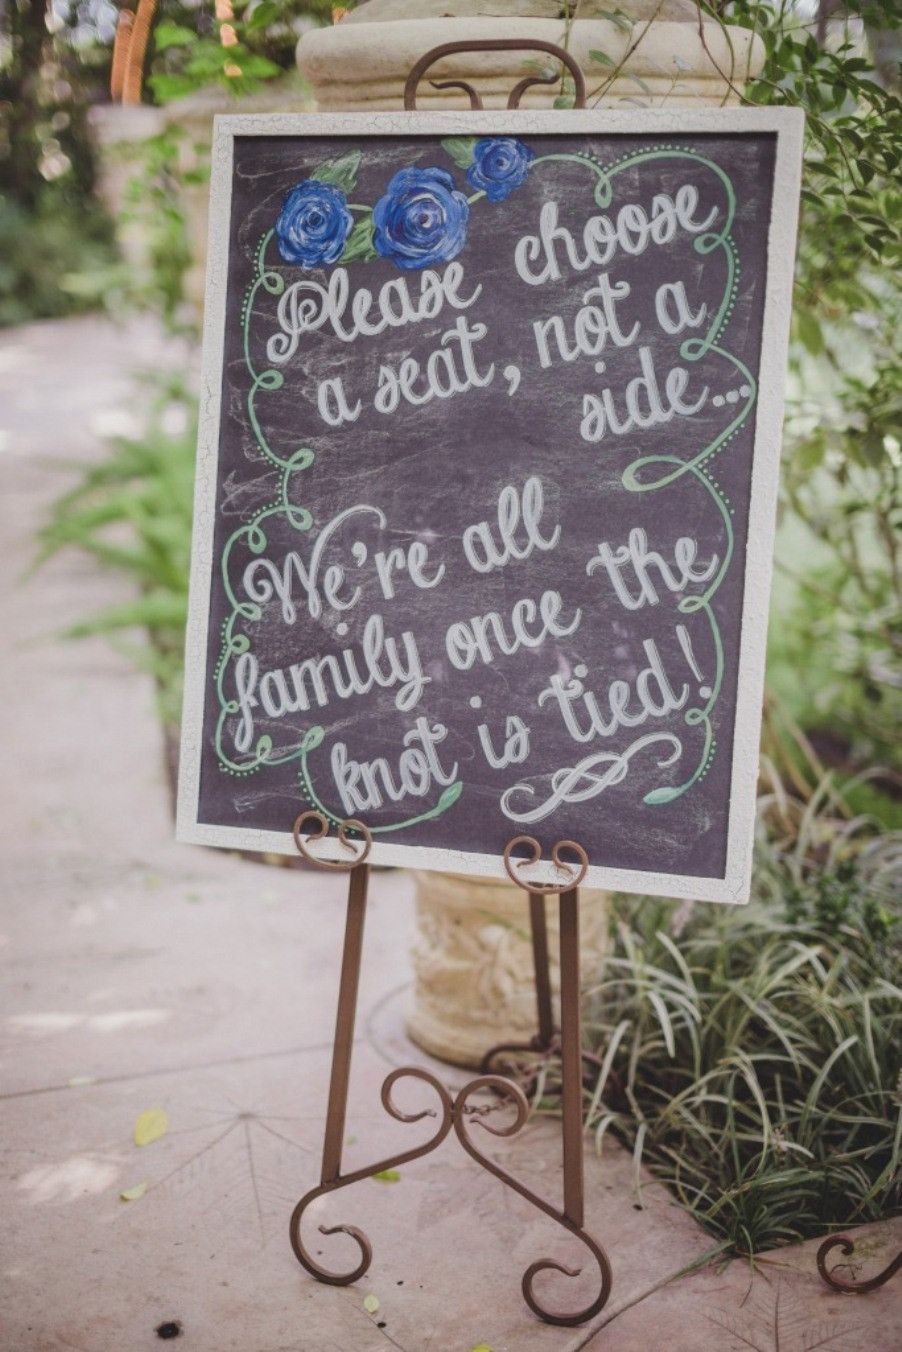 Best ideas about Chalkboard Wedding Signs DIY
. Save or Pin DIY Chalkboard Wedding Signs A Simple Hack Miss Bizi Bee Now.